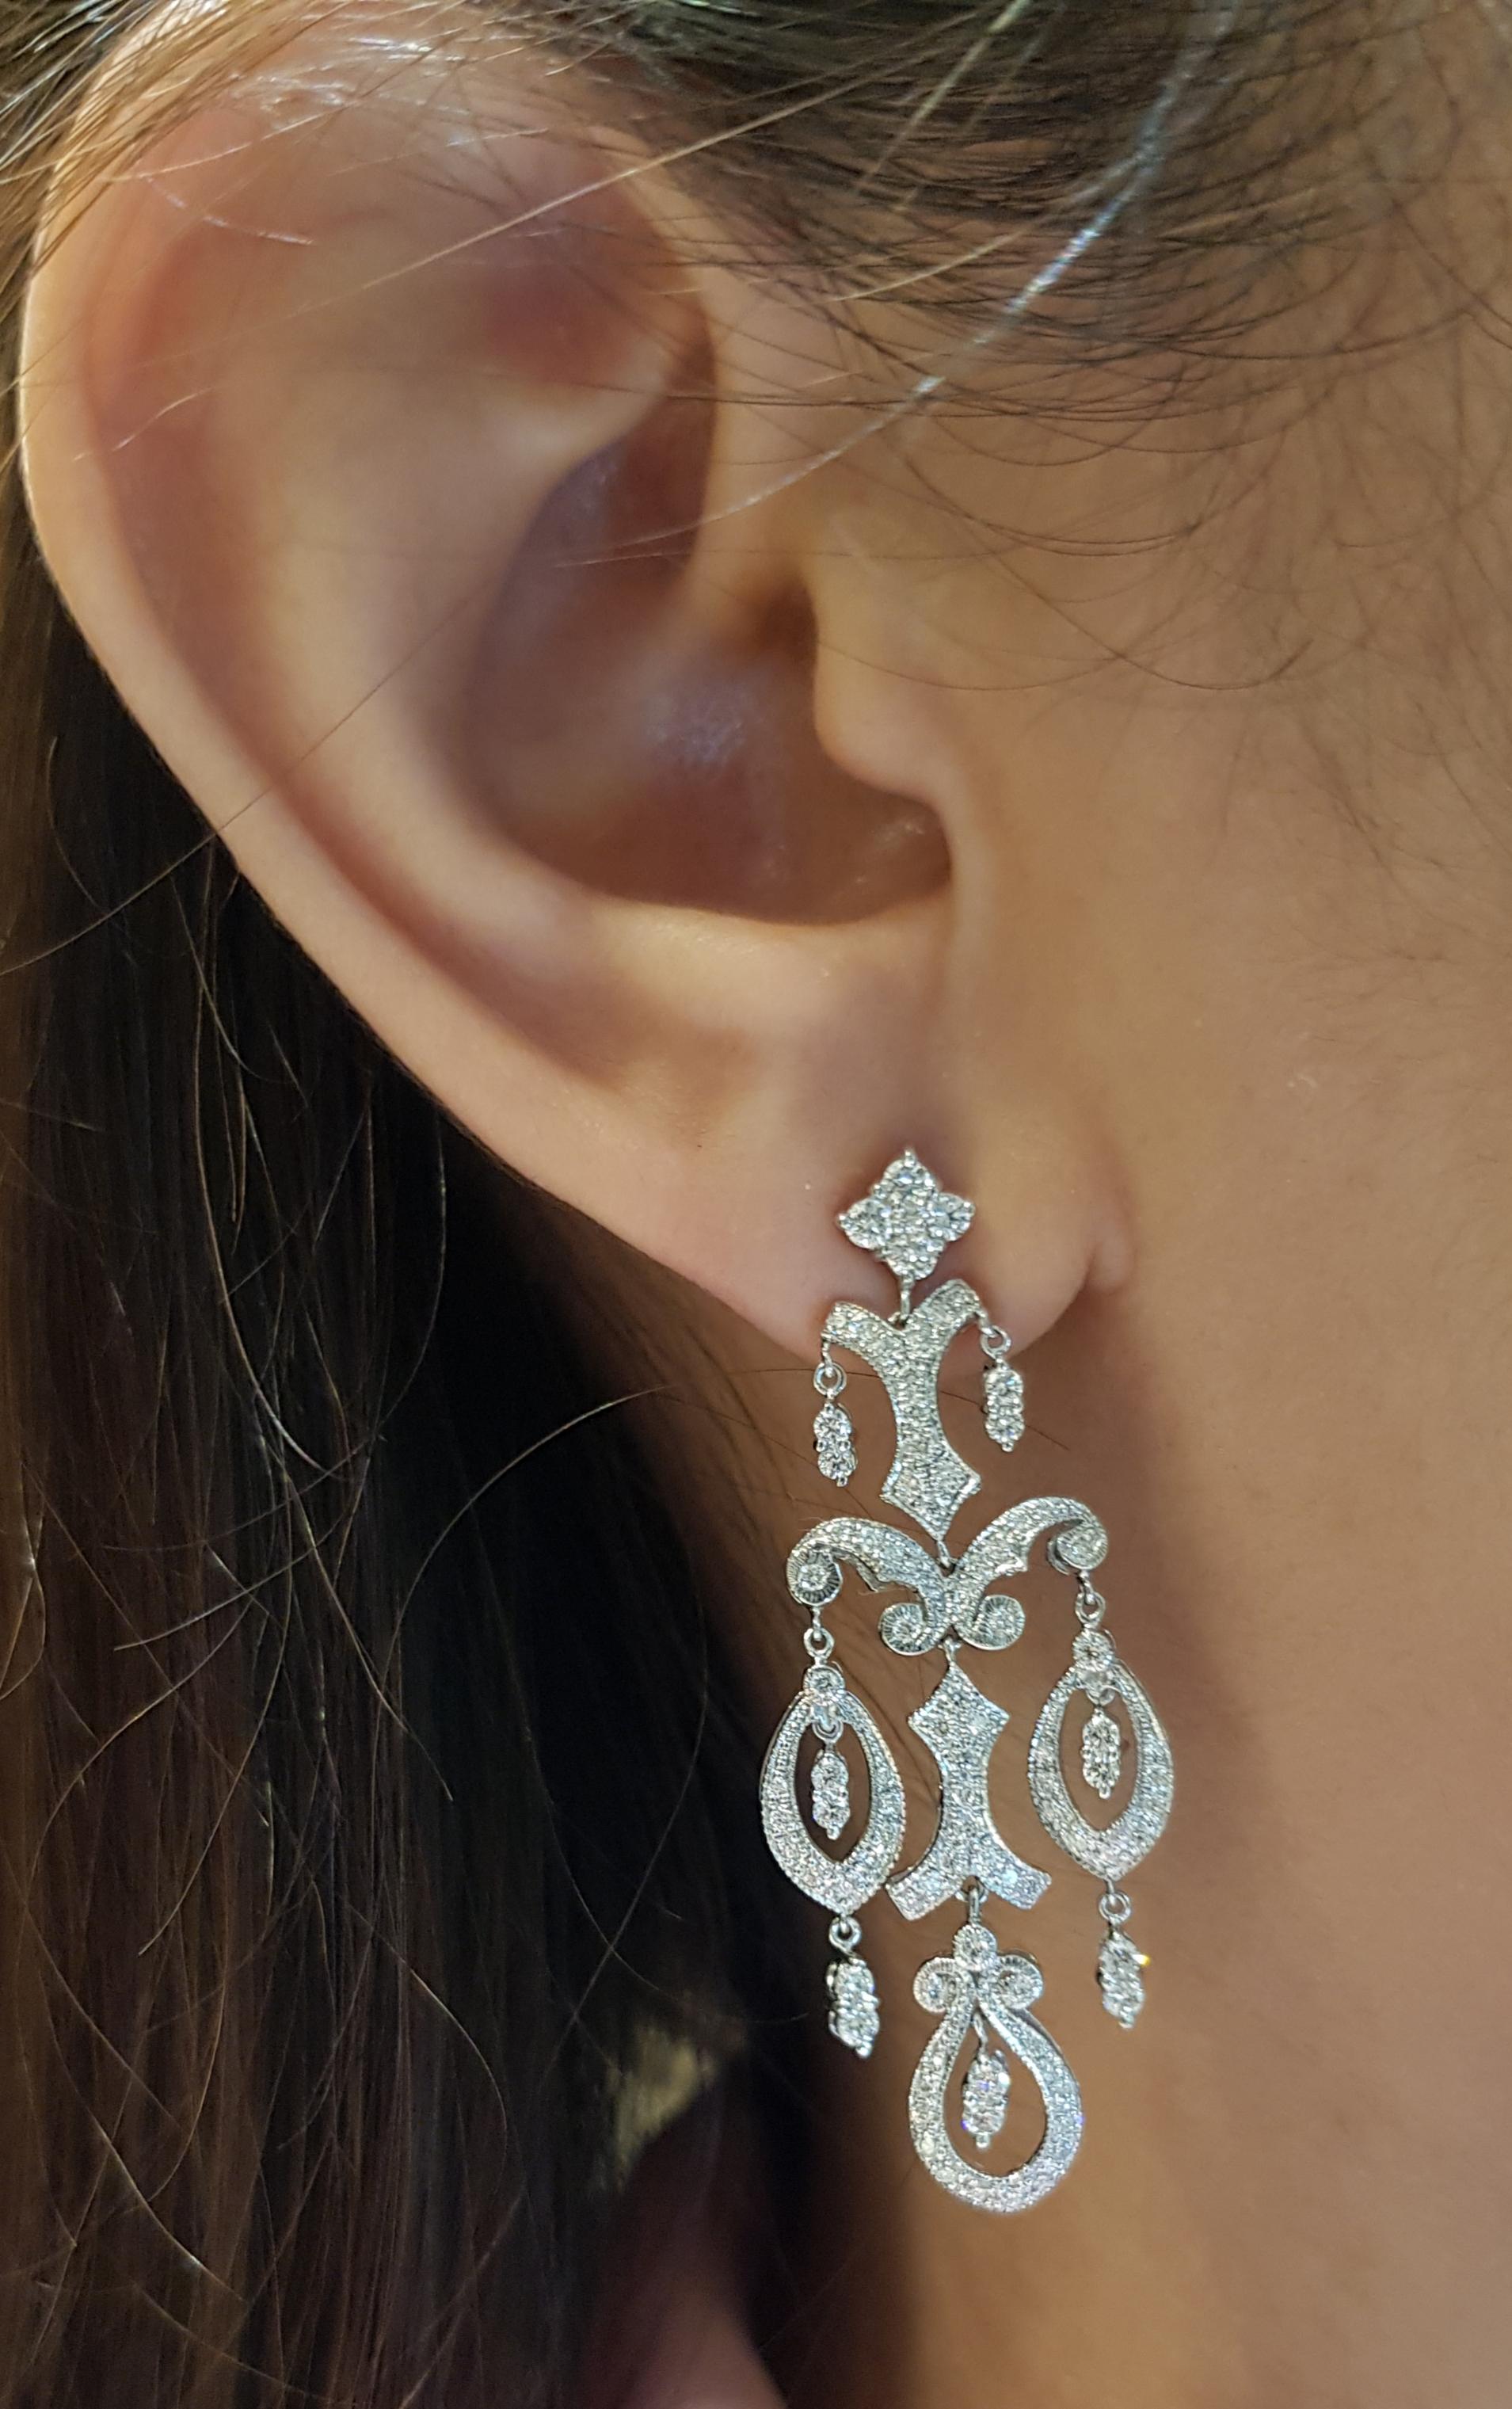 Diamant-Ohrringe mit 1,51 Karat in 18 Karat Weißgoldfassung

Breite:  2.0 cm 
Länge:  4.6 cm
Gesamtgewicht: 11,5 Gramm

